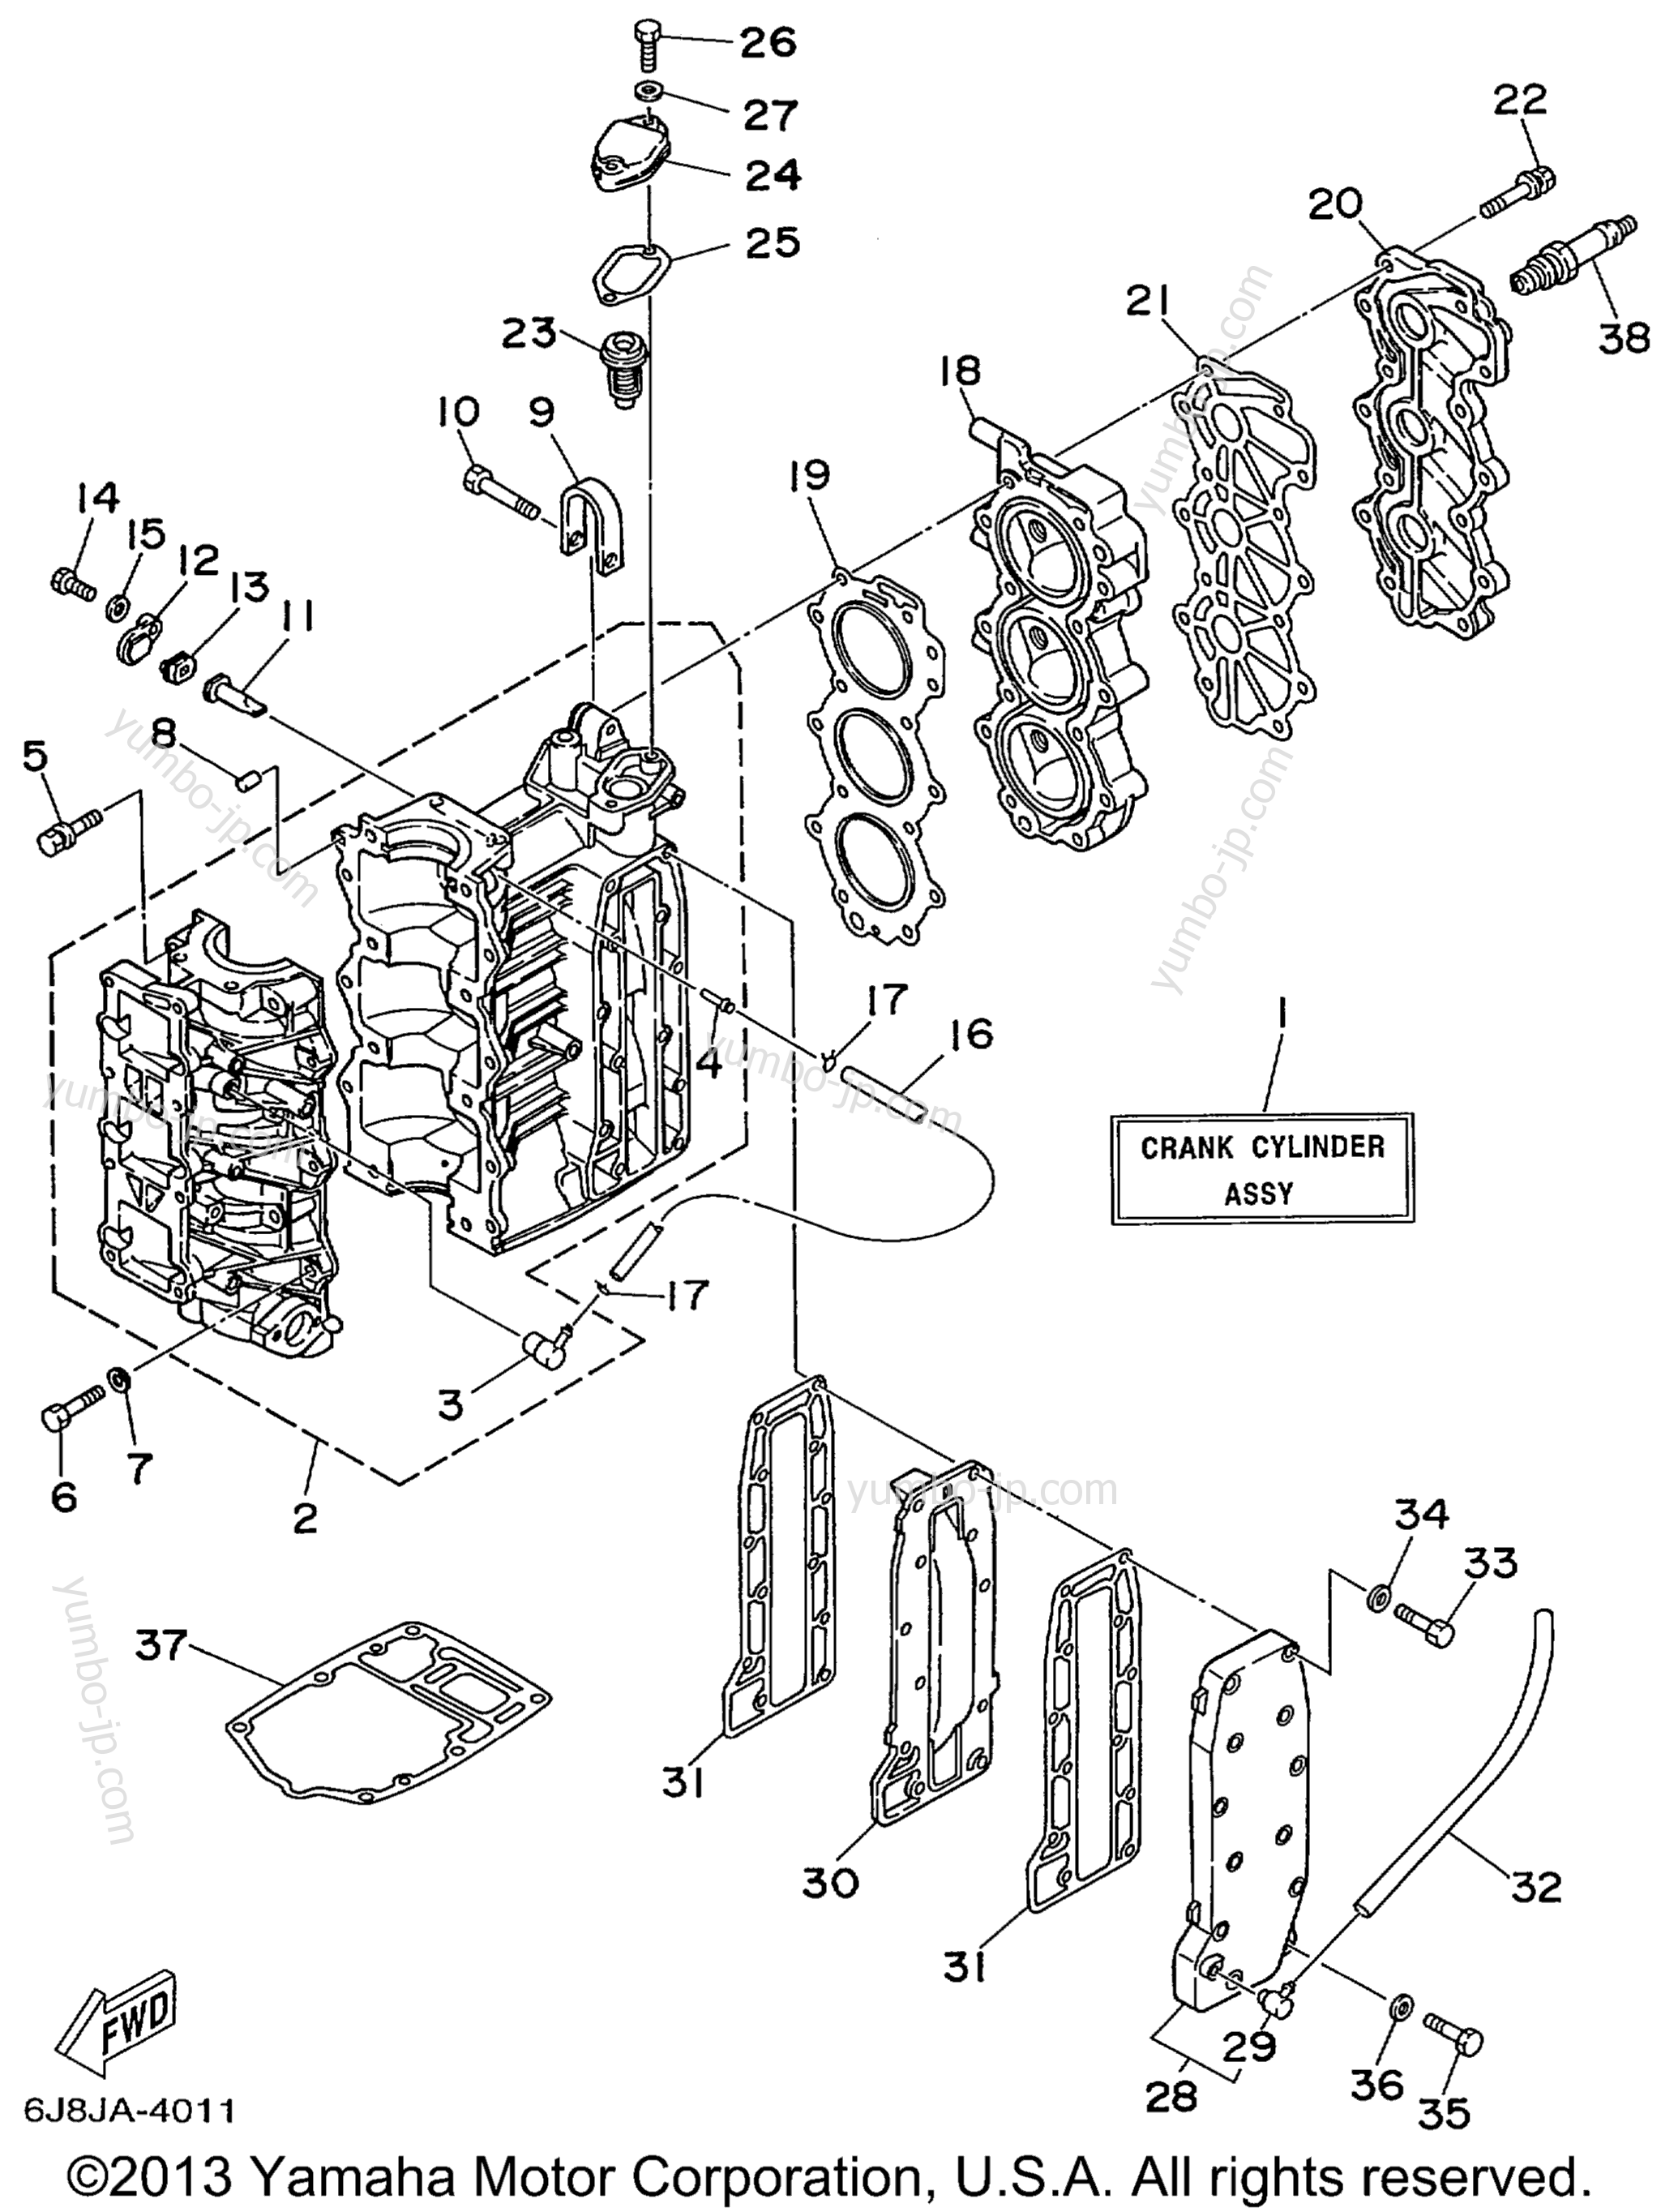 Cylinder Crankcase для лодочных моторов YAMAHA 30MSHX_MLHX_ELHX_ELRX (25MSHX3) 1999 г.